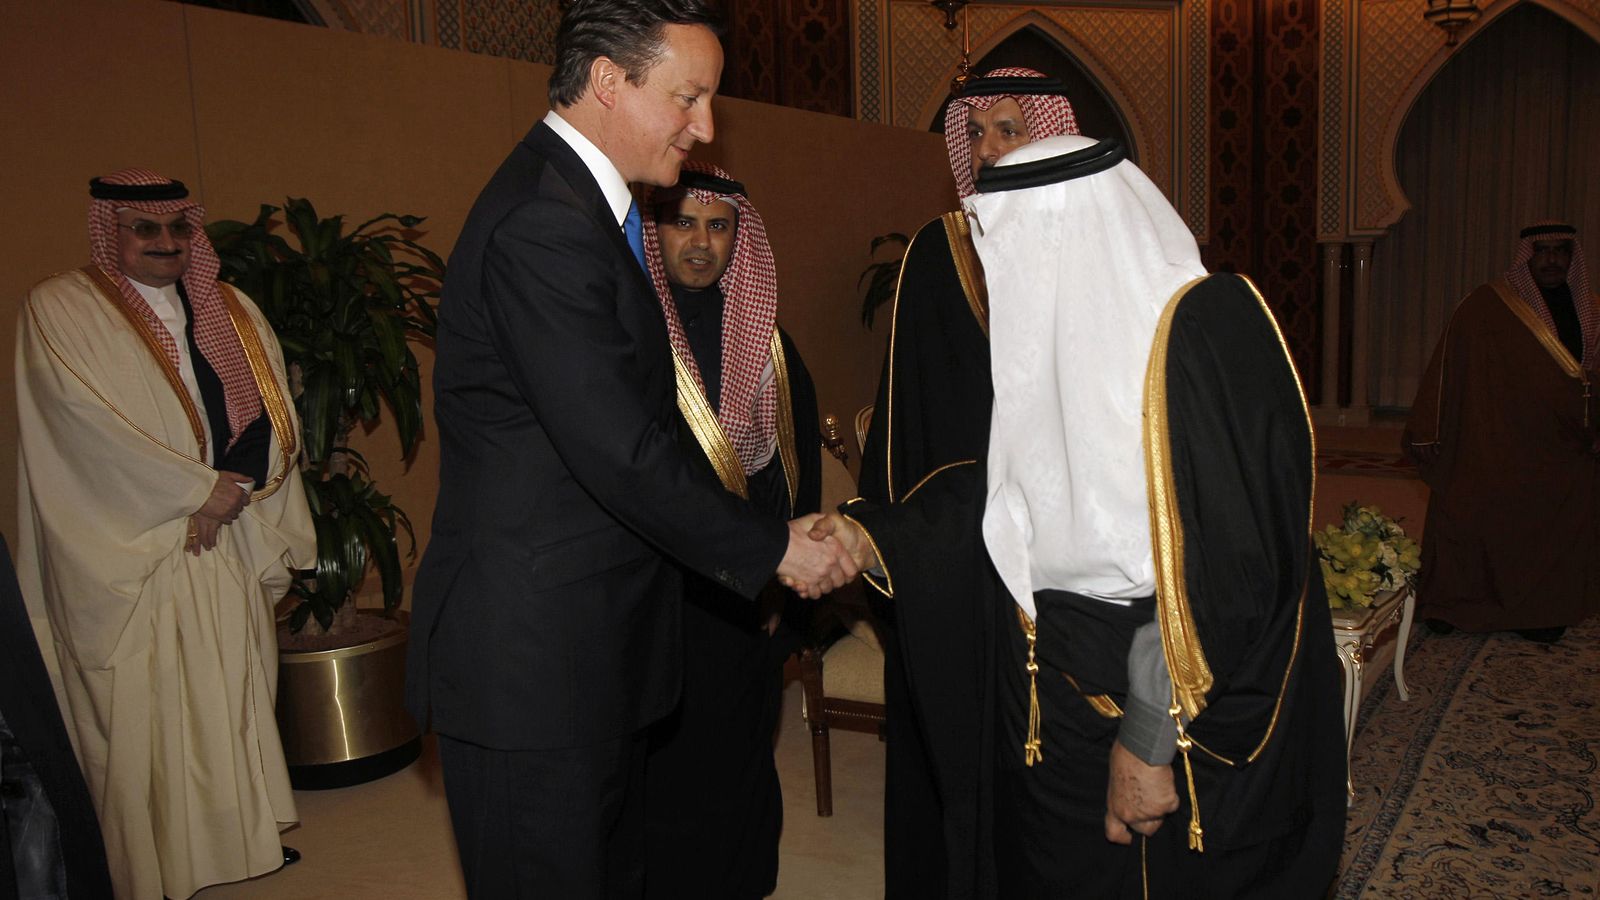 Foto: El primer ministro David Cameron junto al príncipe Nayef durante una vista del 'premier' a Riad, Arabia Saudí, el 13 de enero de 2012 (Reuters).